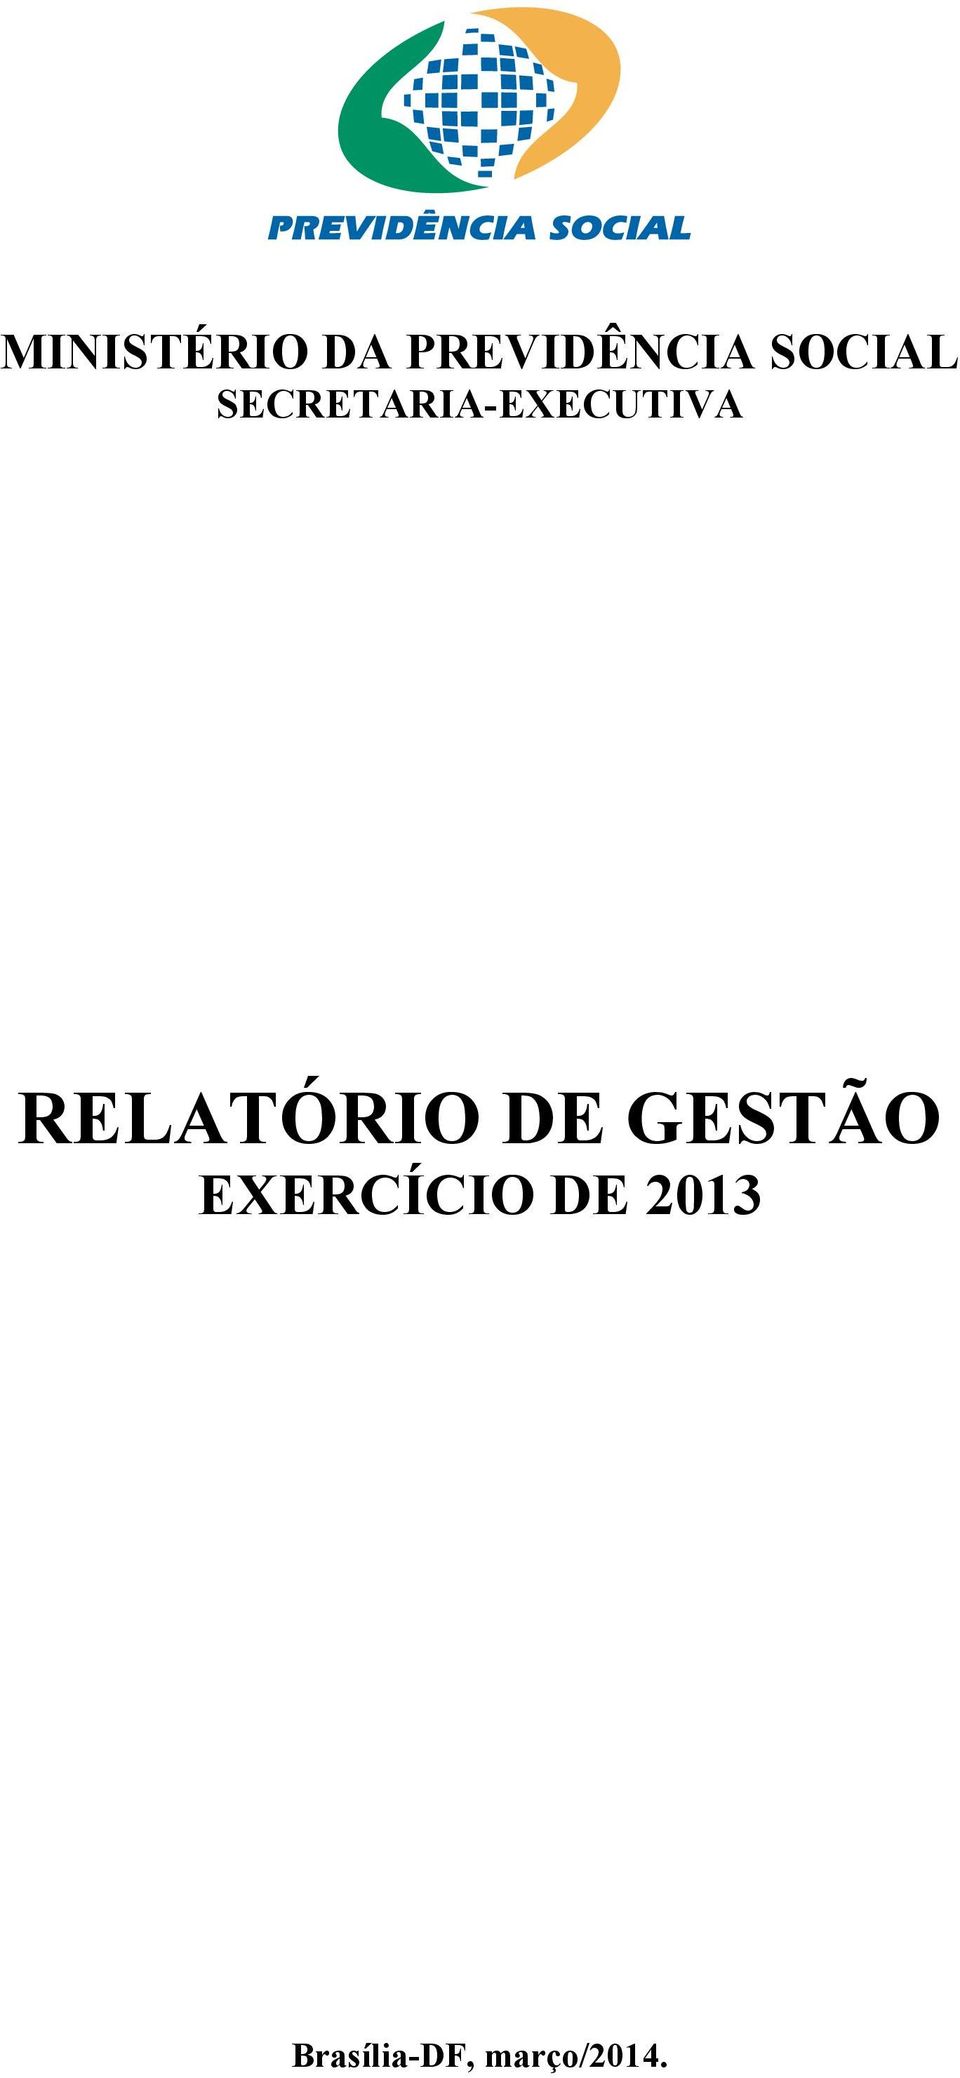 DE GESTÃO EXERCÍCIO DE 2013